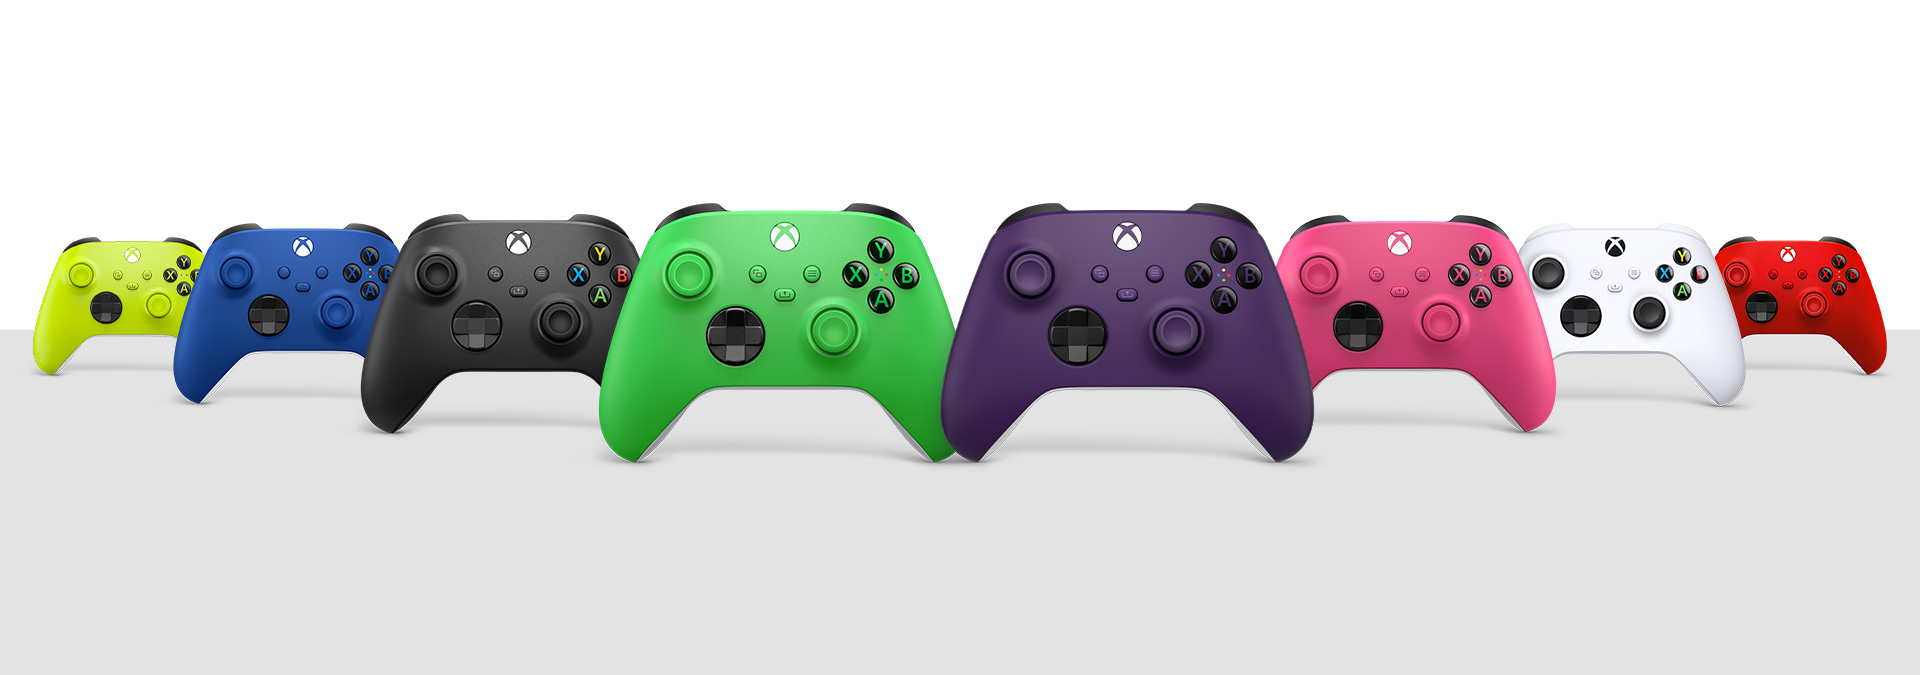 Xbox 無線控制器碳黑色、機器白、衝擊藍、脈衝紅、電擊黃、深粉紅、疾速綠和星雲紫